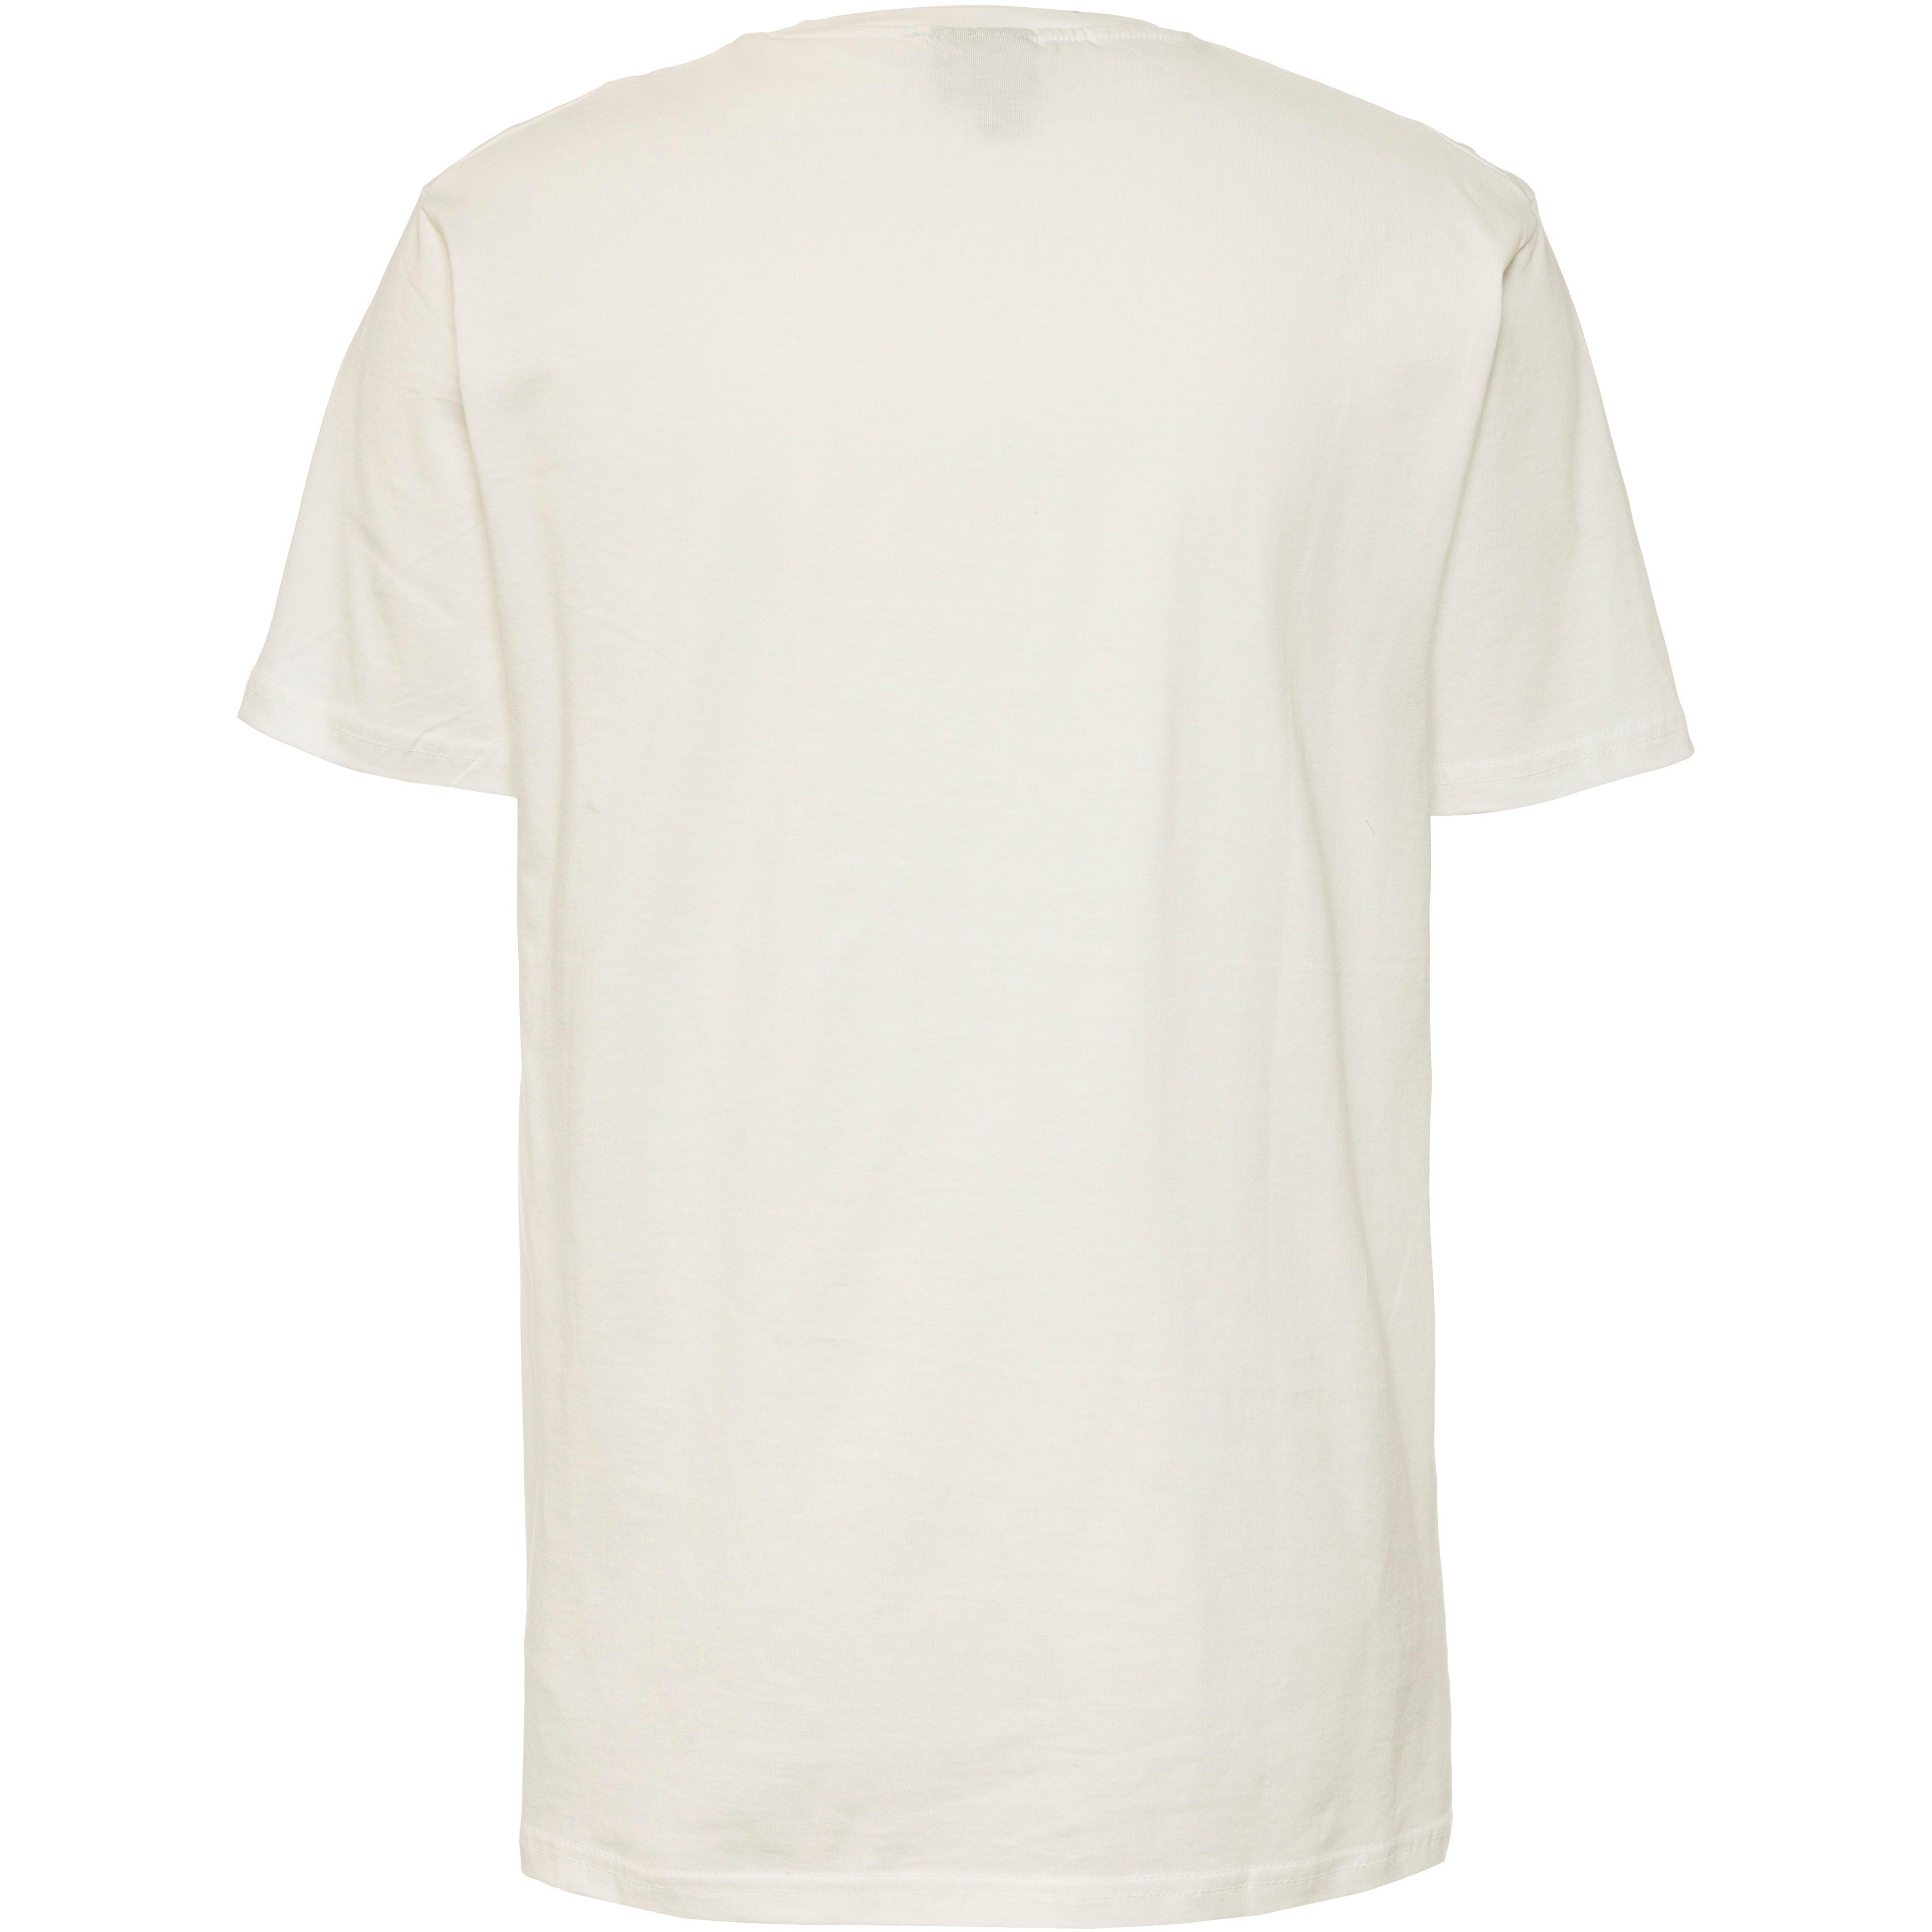 Ellesse Fuenti T-Shirt Herren white im Online Shop von SportScheck kaufen